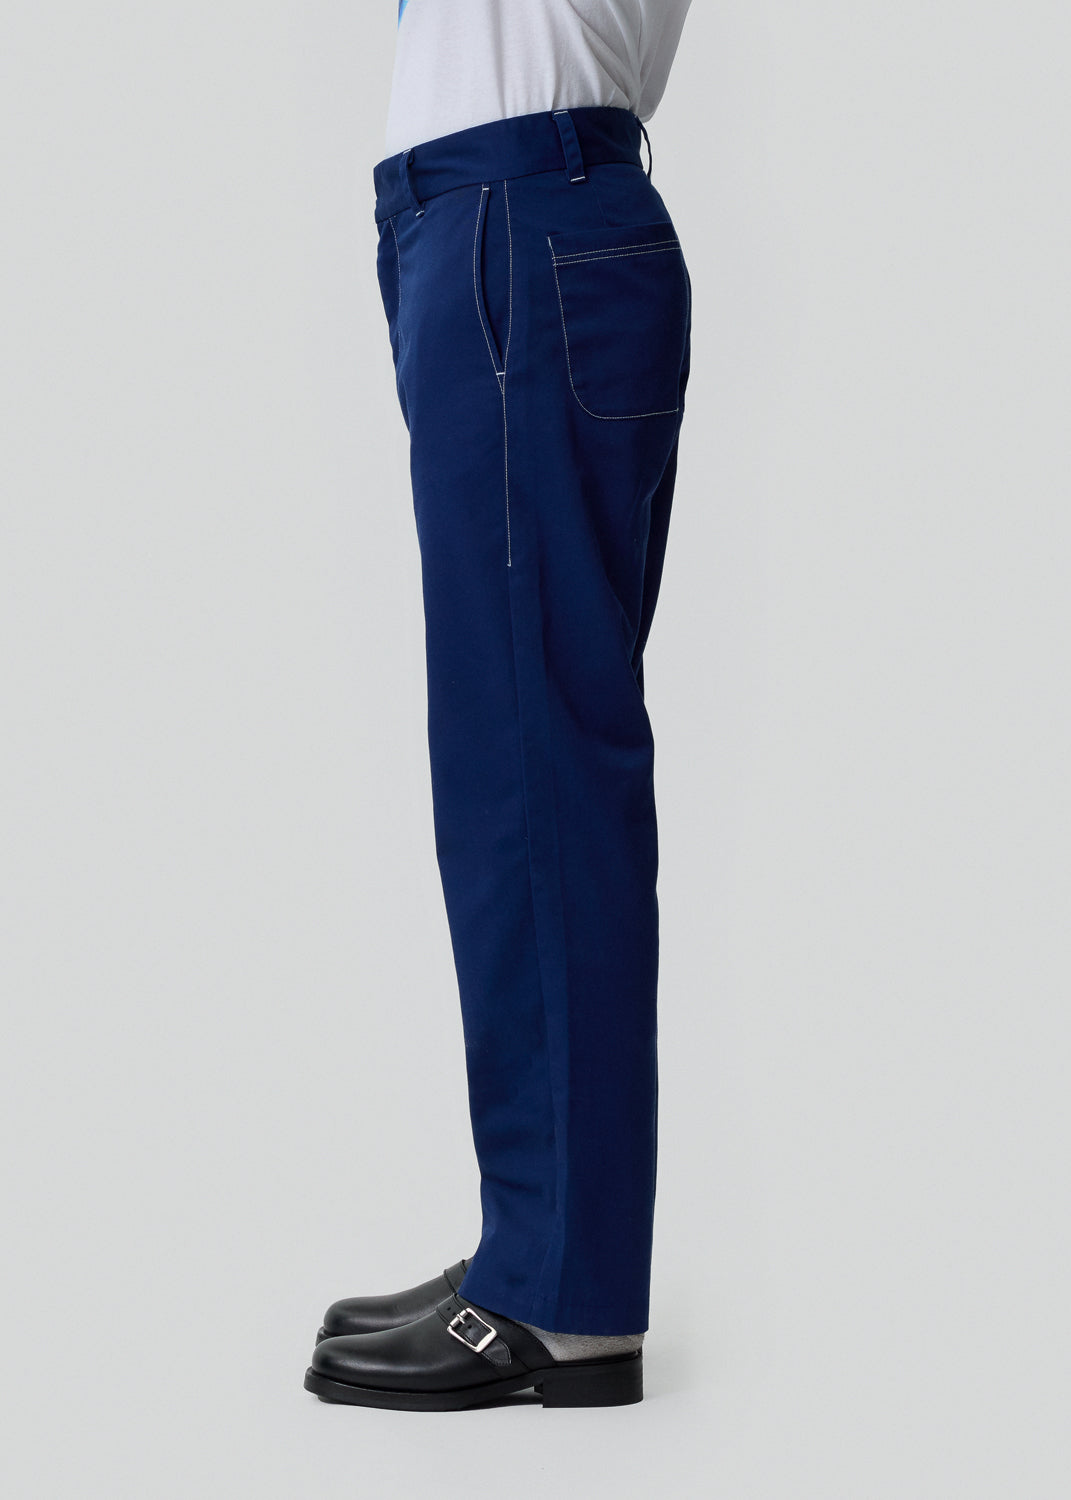 Blue Chino Pants